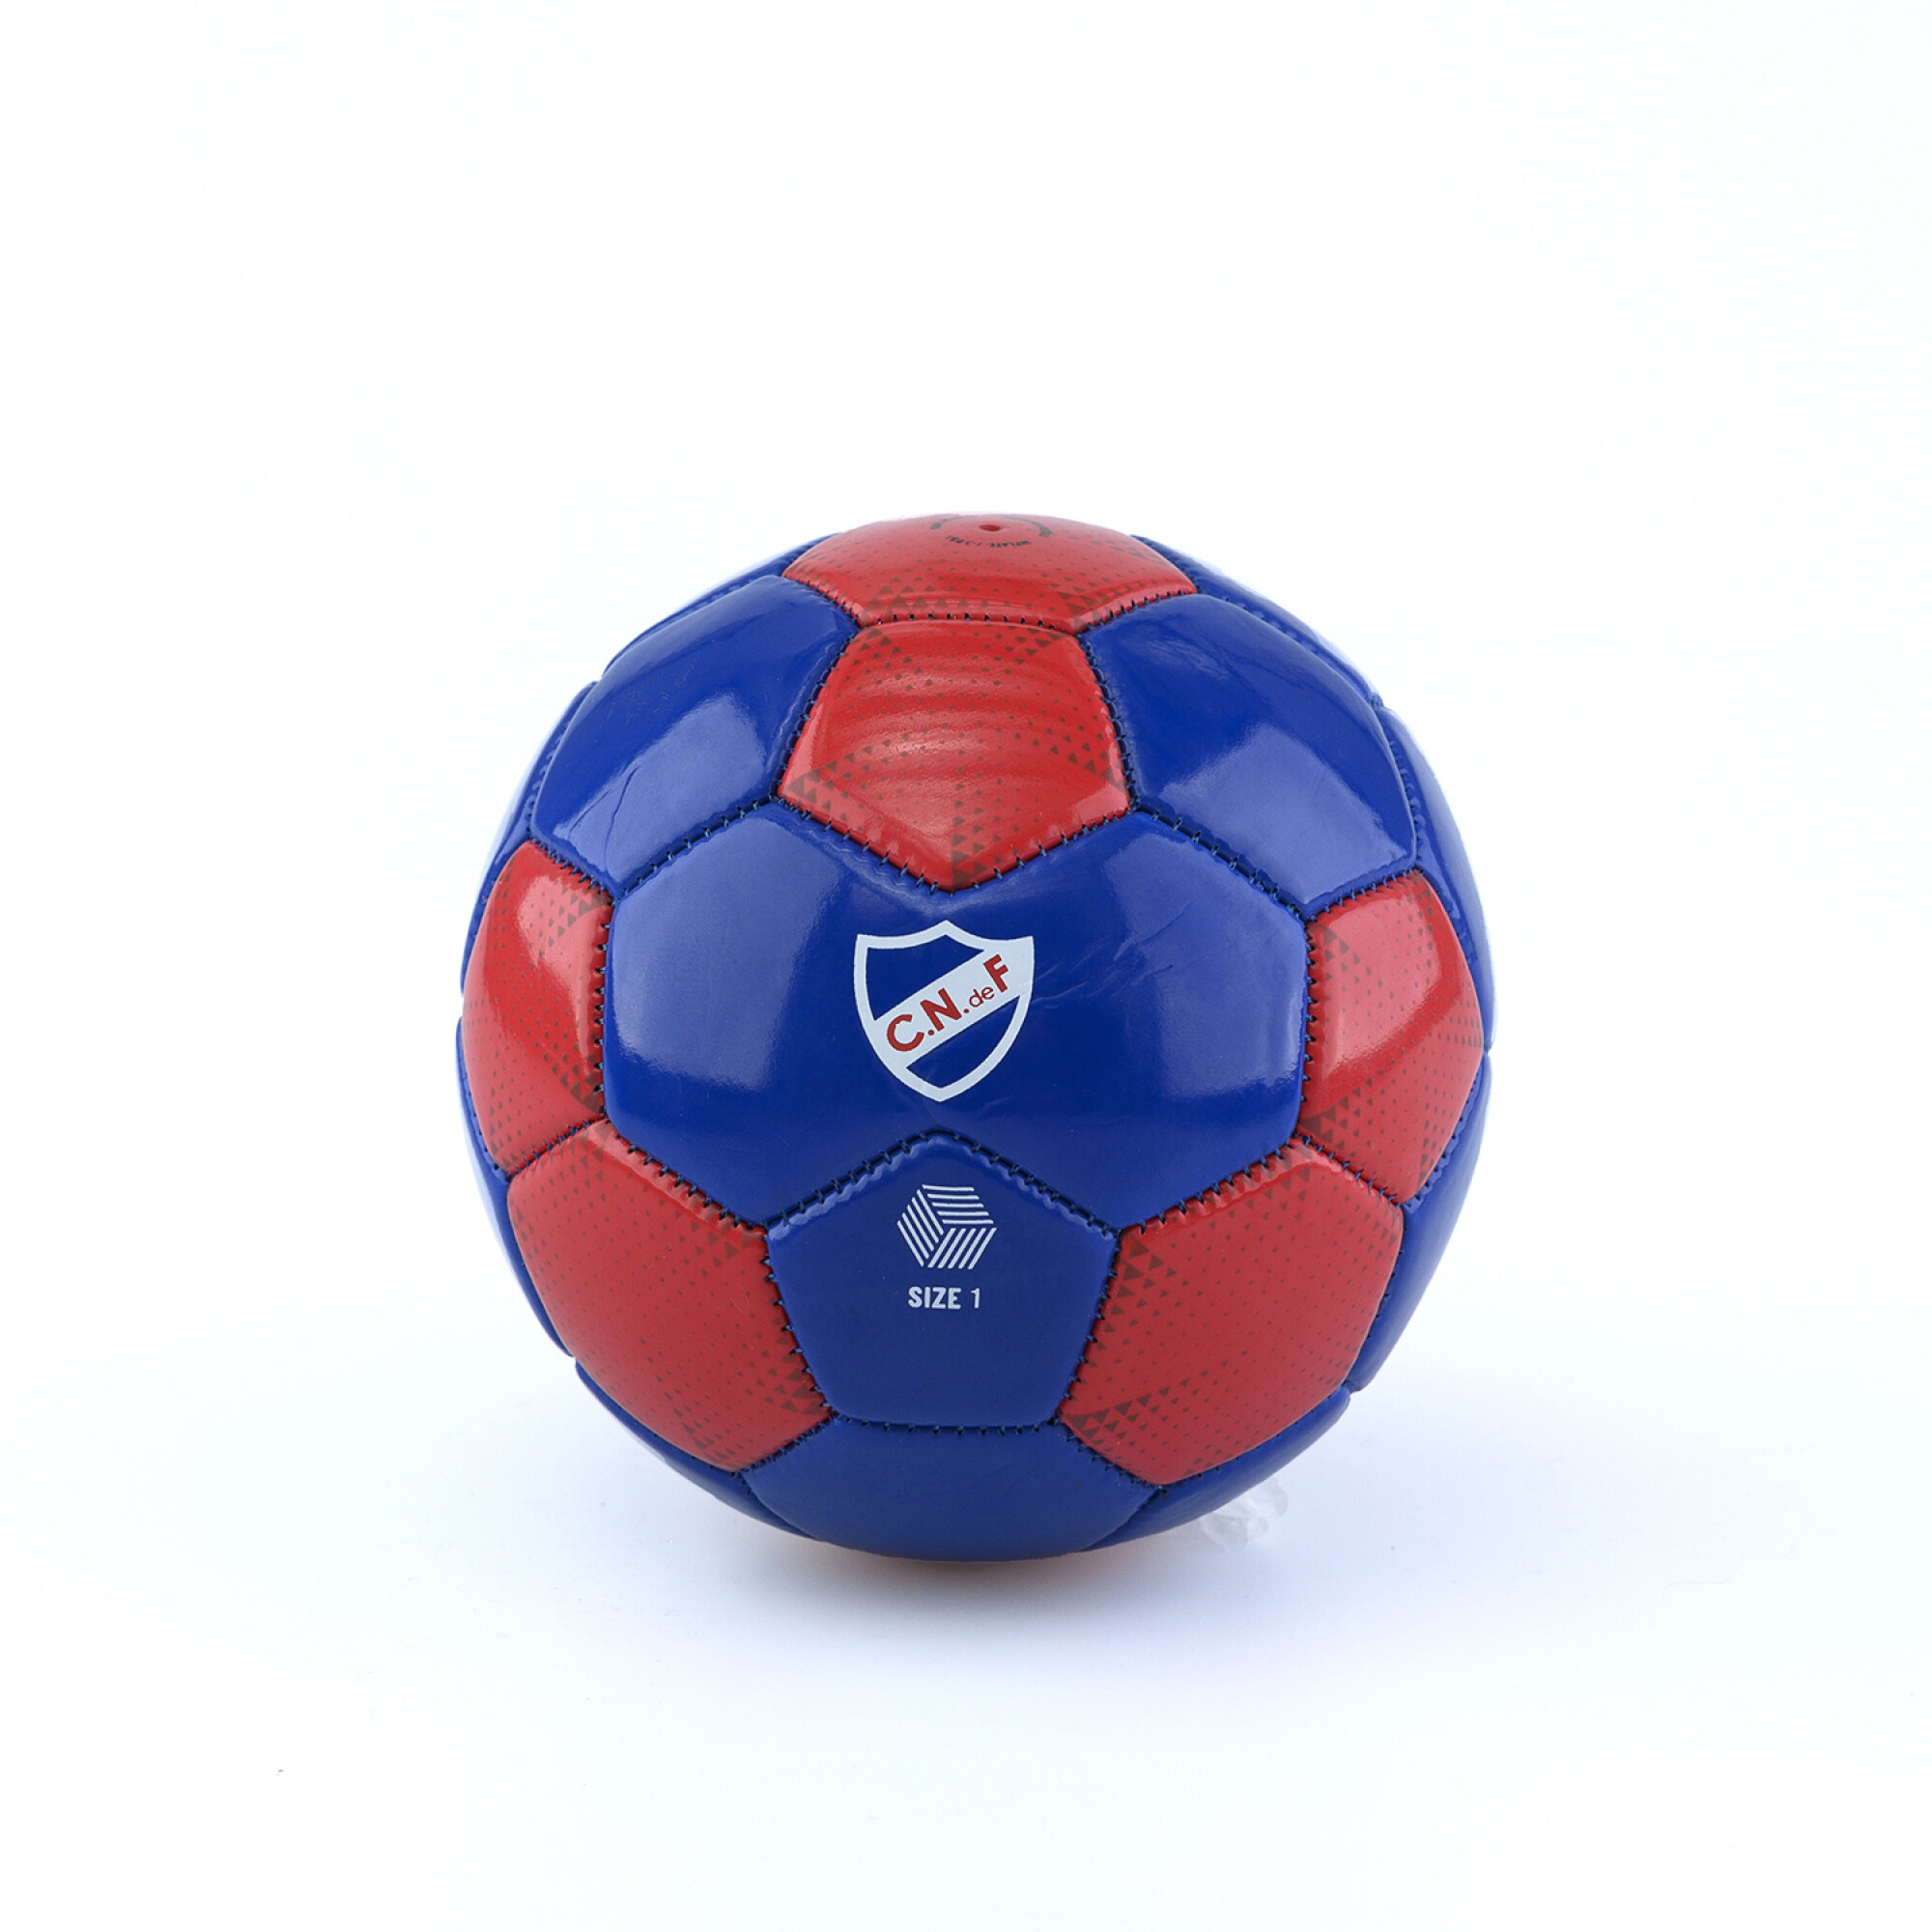 Cómo elegir un balón de fútbol ⚽ - Store Futbol